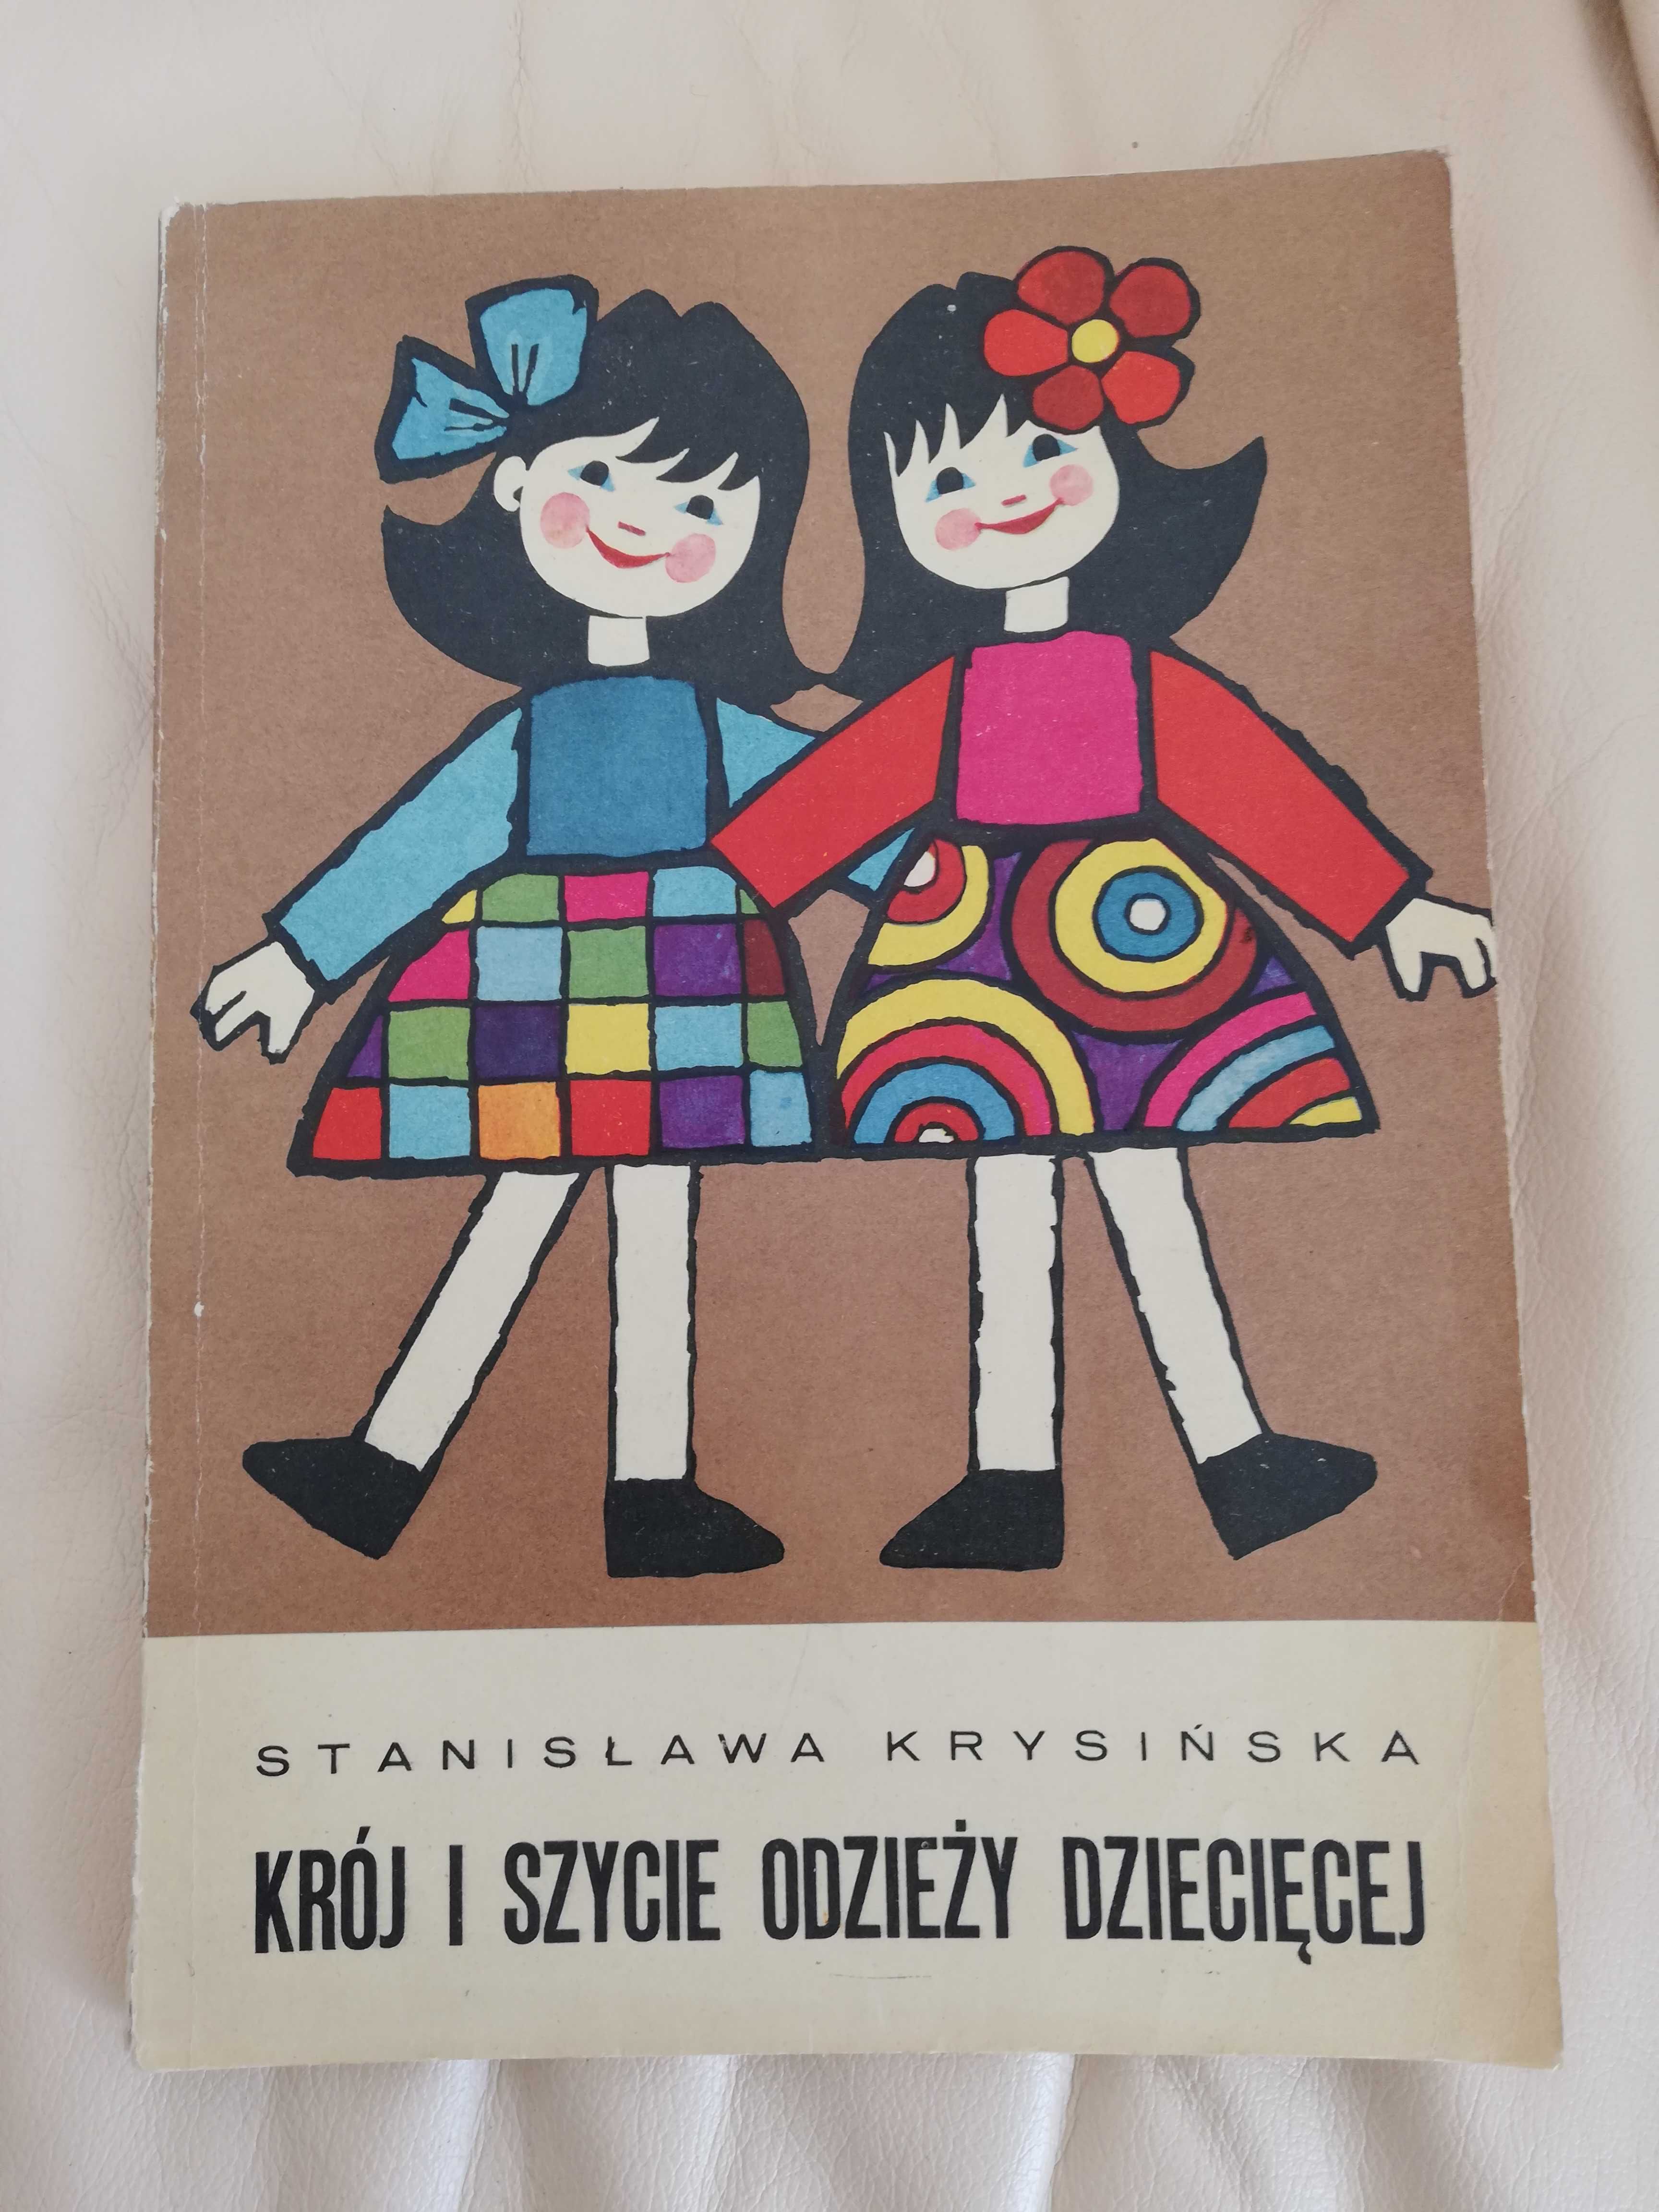 Krój i szycie odzieży dziecięcej - Stanisława Krysińska - wydanie I